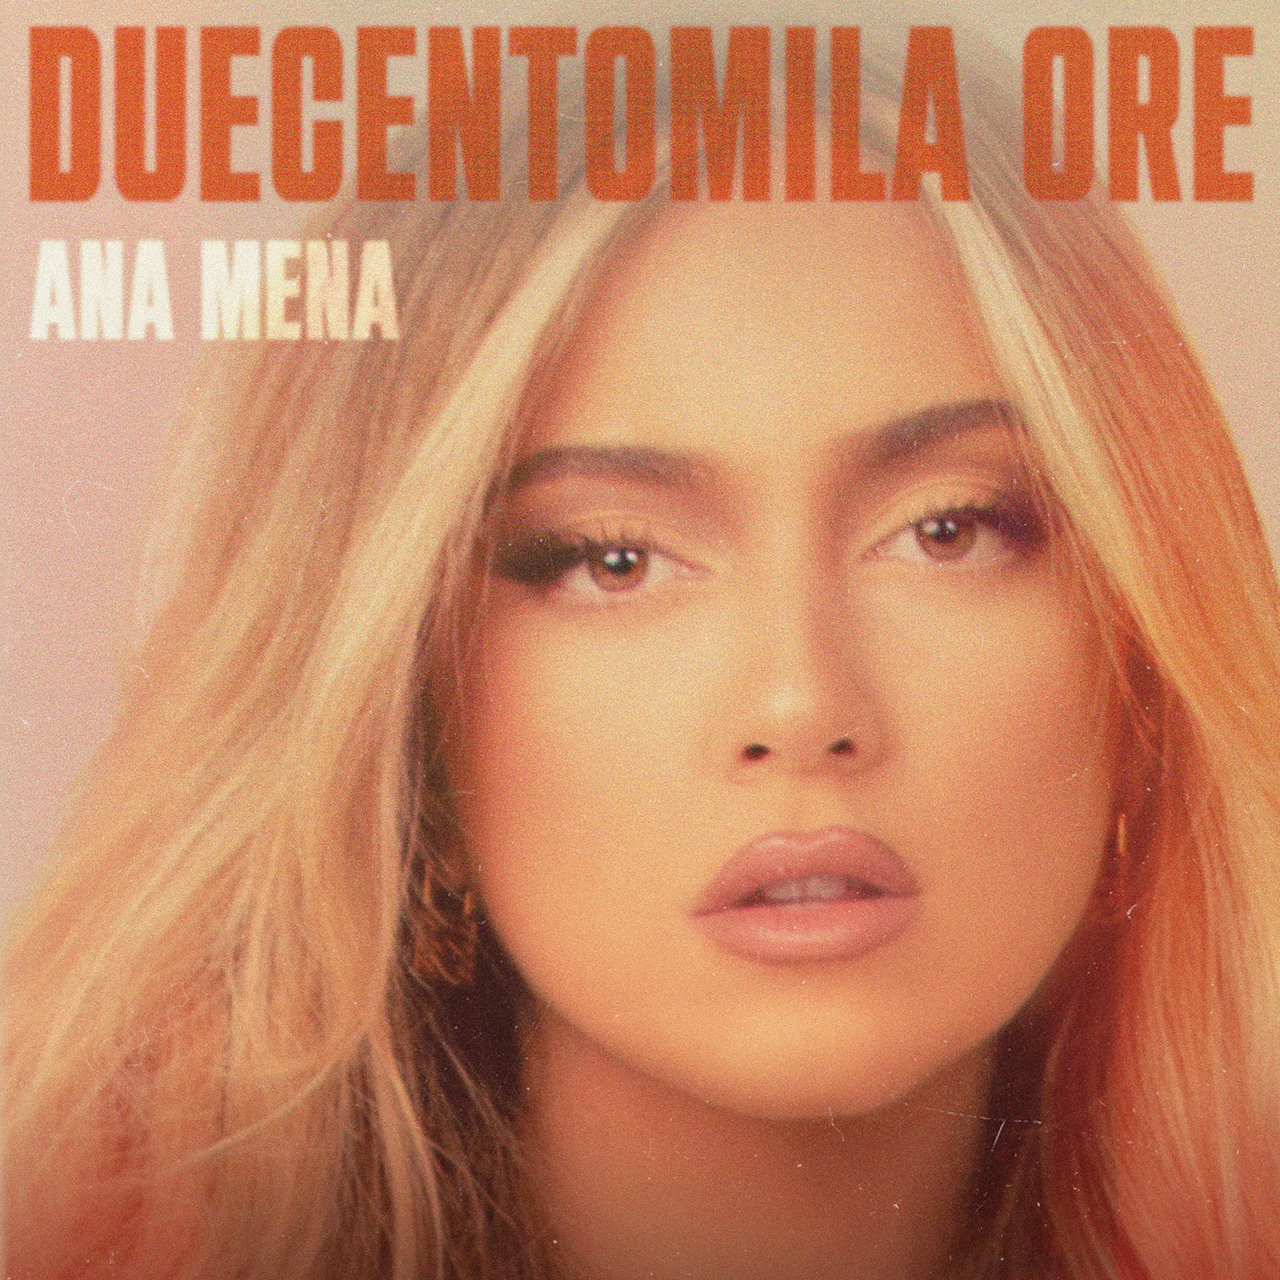 Ana Mena — Duecentomila ore cover artwork